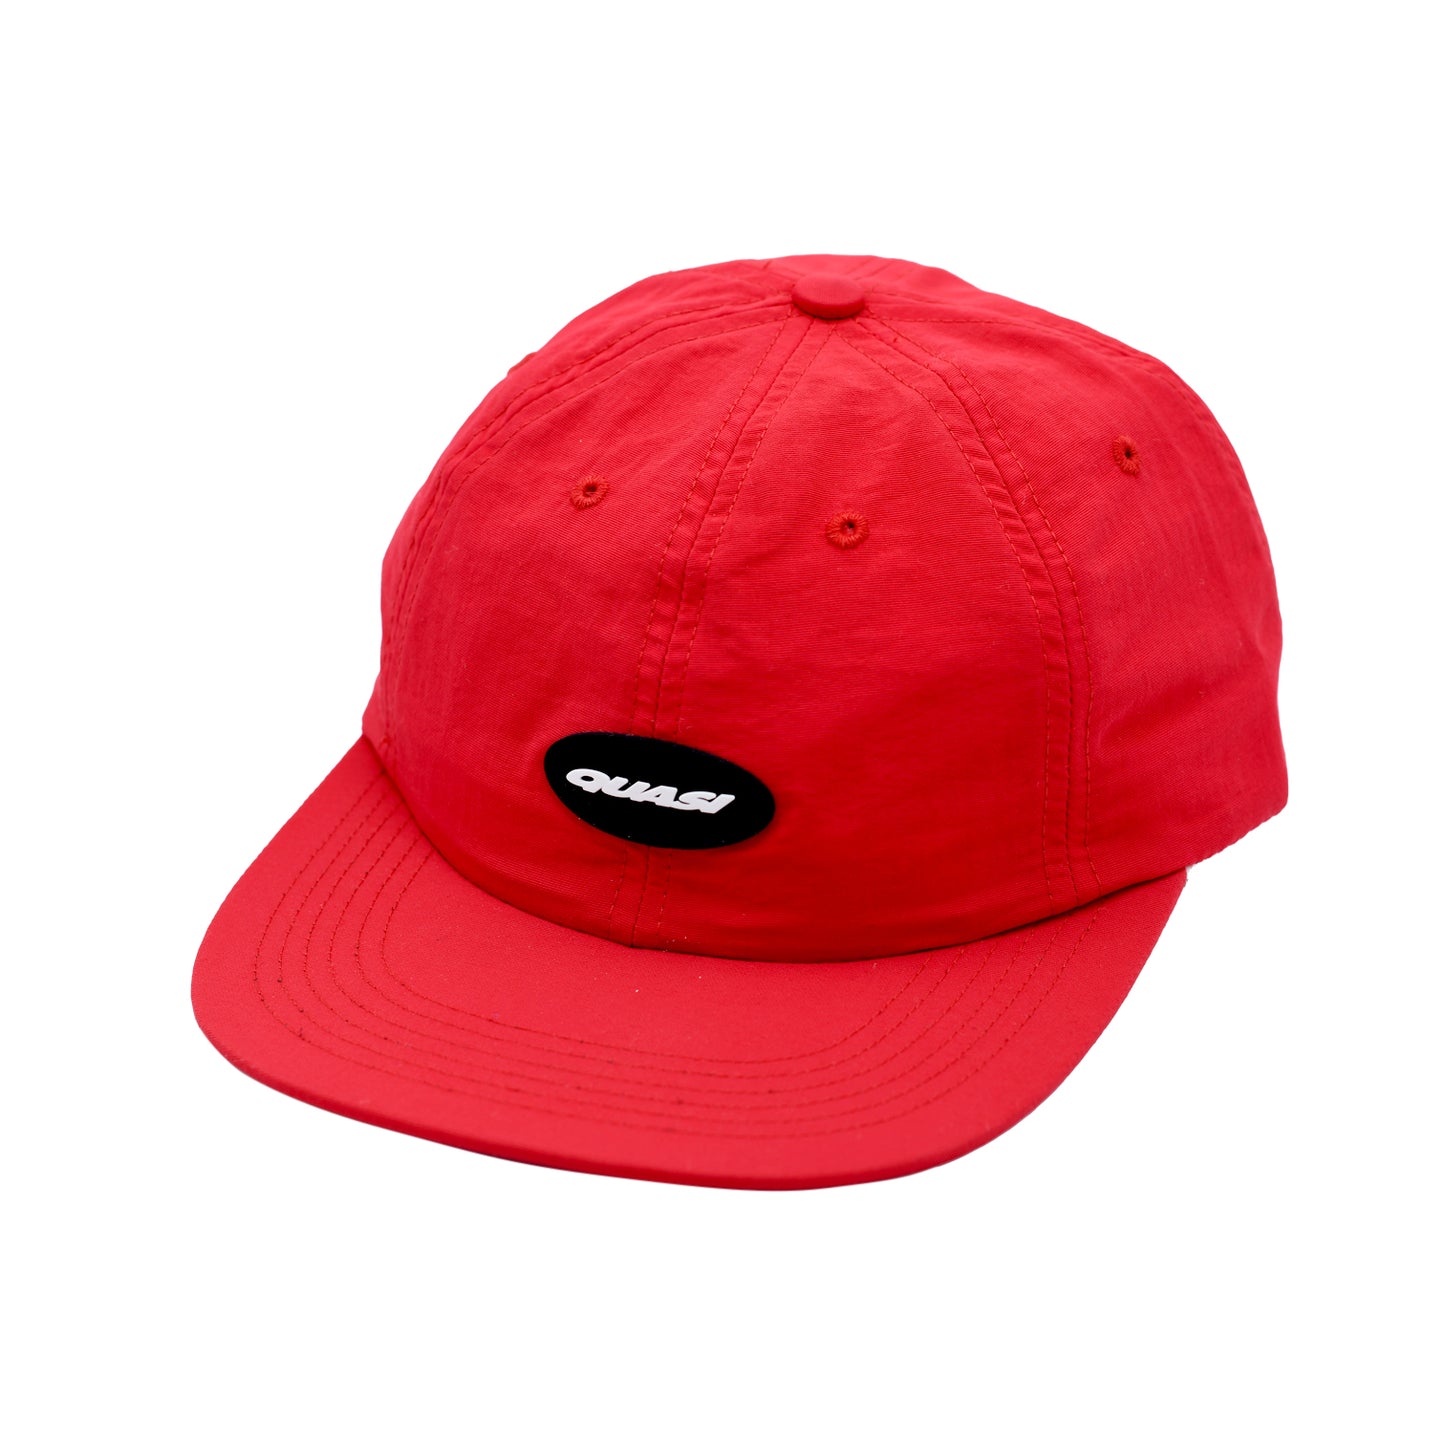 QUASI - COURT 6 PANEL CAP - RED